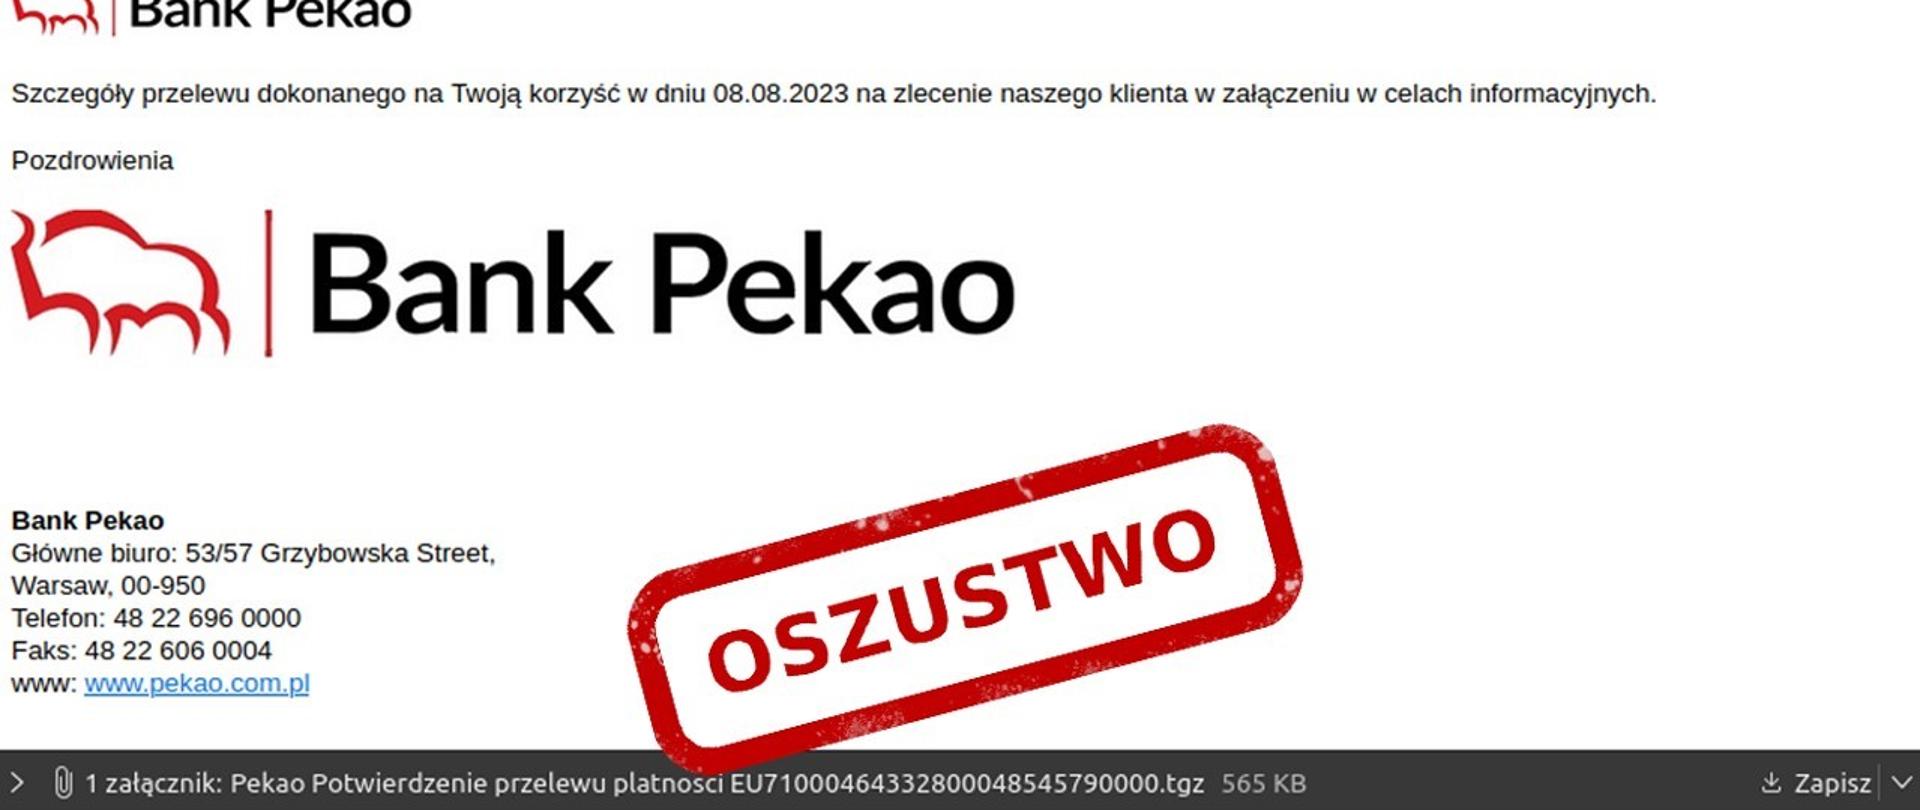 Zdjęcie fałszywej wiadomości e-mail z logo Banku PKO S.A i rzekomym załącznikiem Pekao Potwierdzenie przelewu. Na zdjęciu czerwony napis oszustwo 